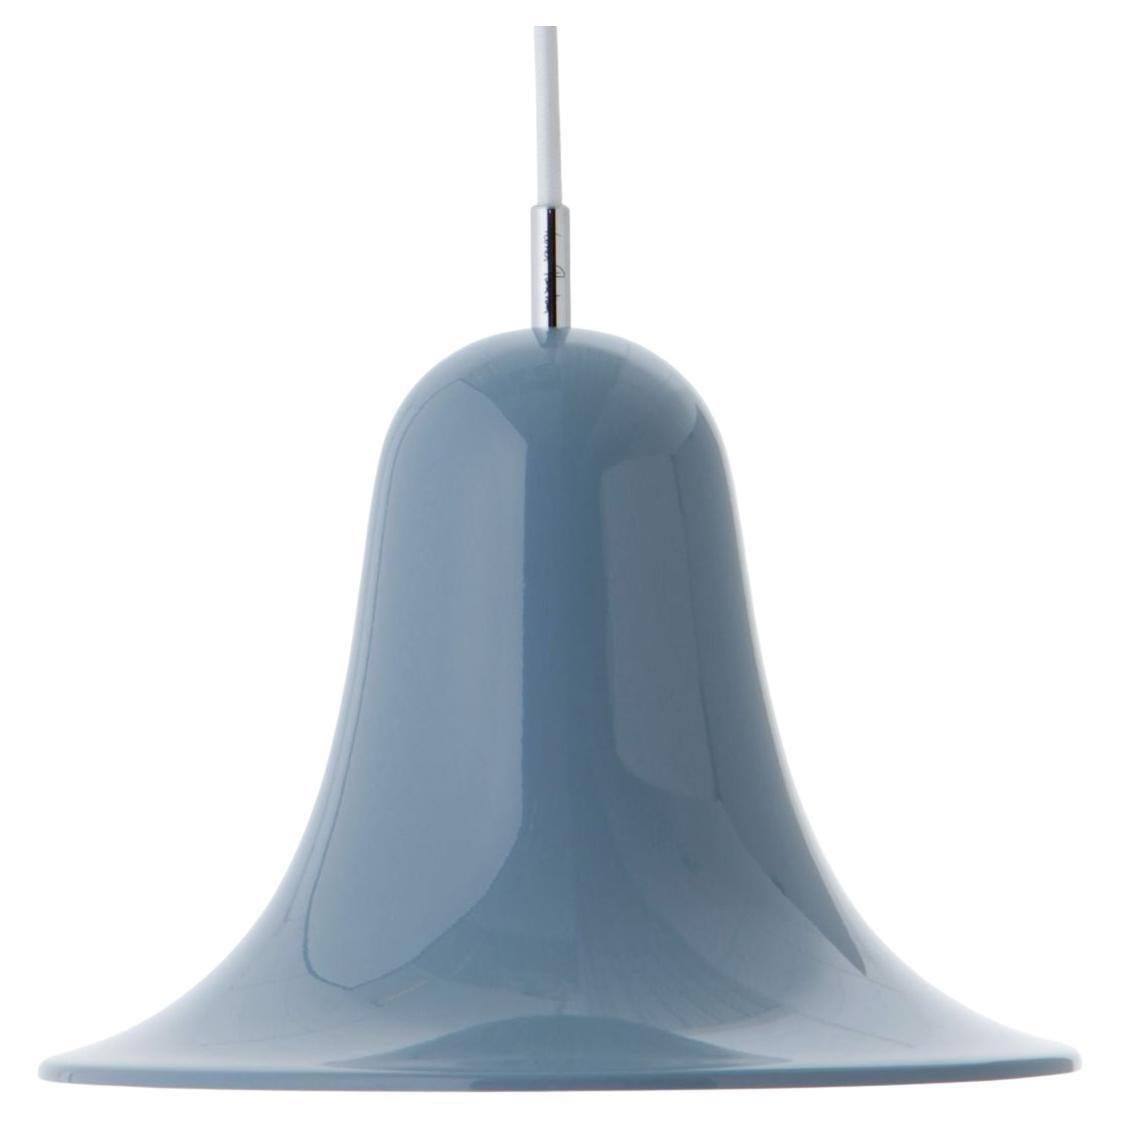 Verner Panton 'Pantop' Pendant Lamp in Metal and Glossy Dusty Blue for Verpan